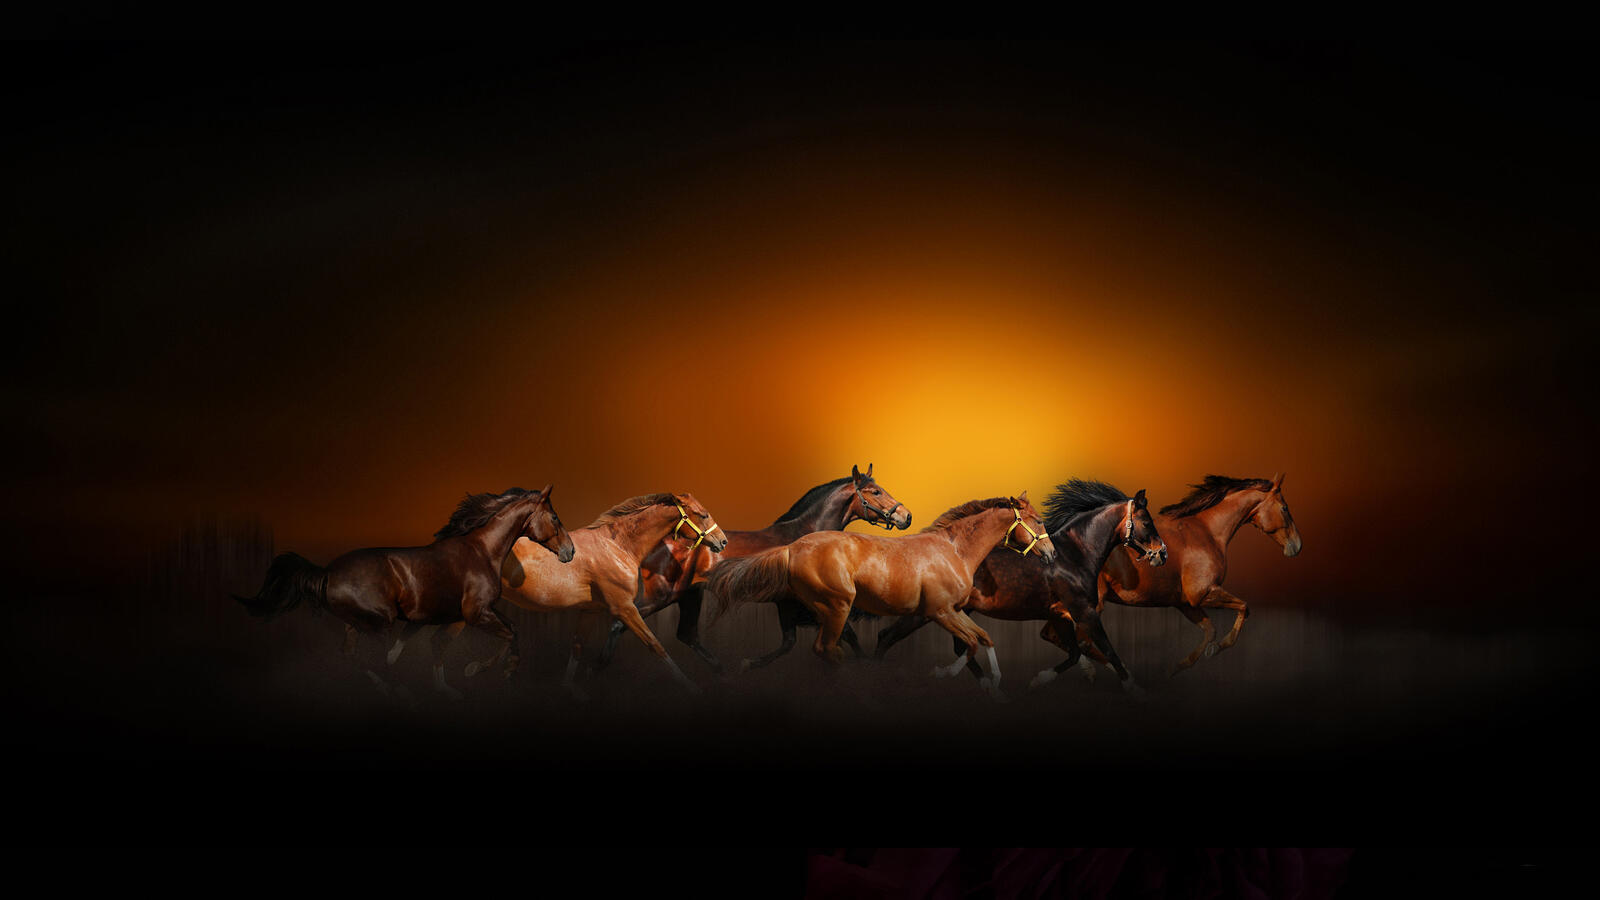 Wallpapers horses art racing on the desktop